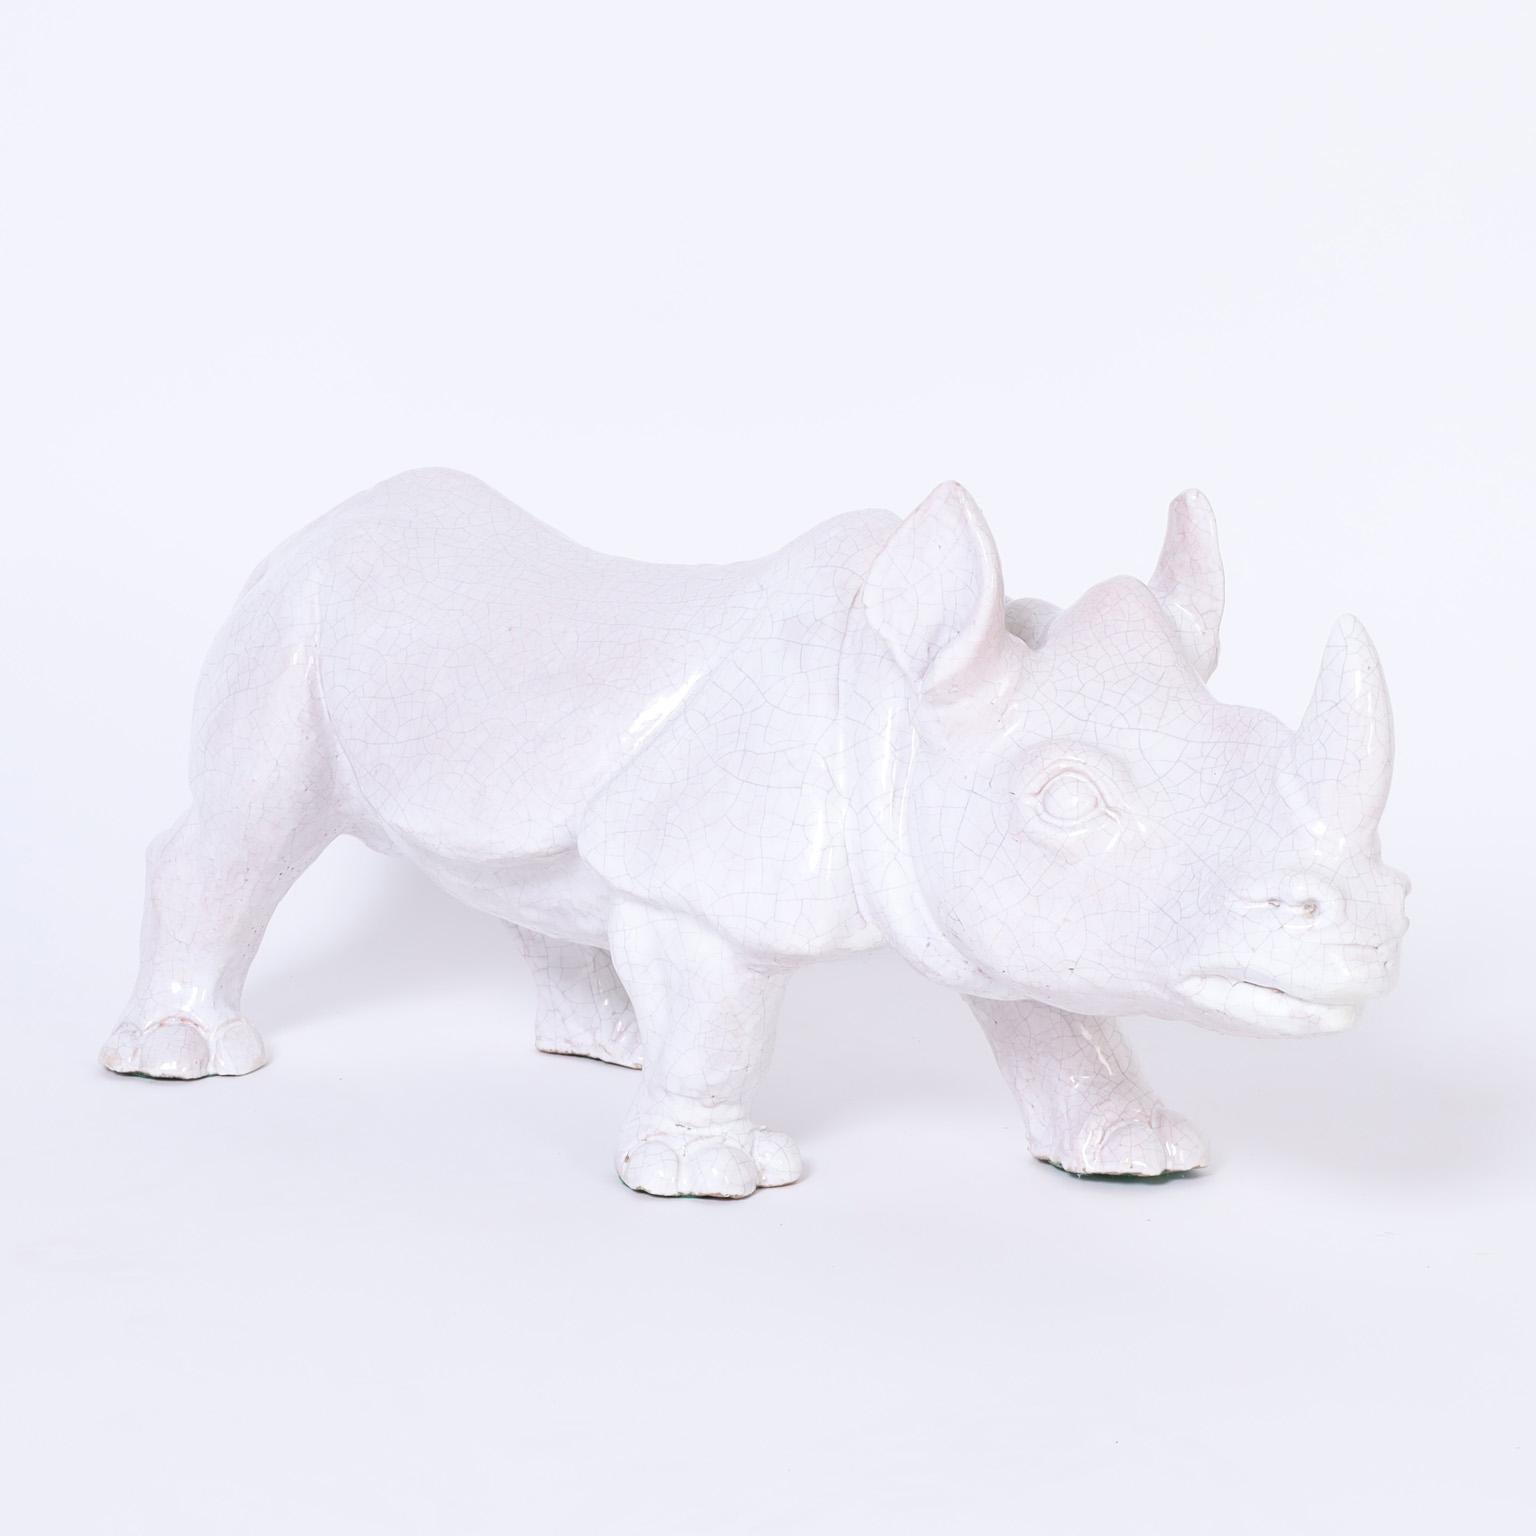 Sculpture de rhinocéros du milieu du siècle, réalisée en terre cuite avec un glaçage blanc craquelé.